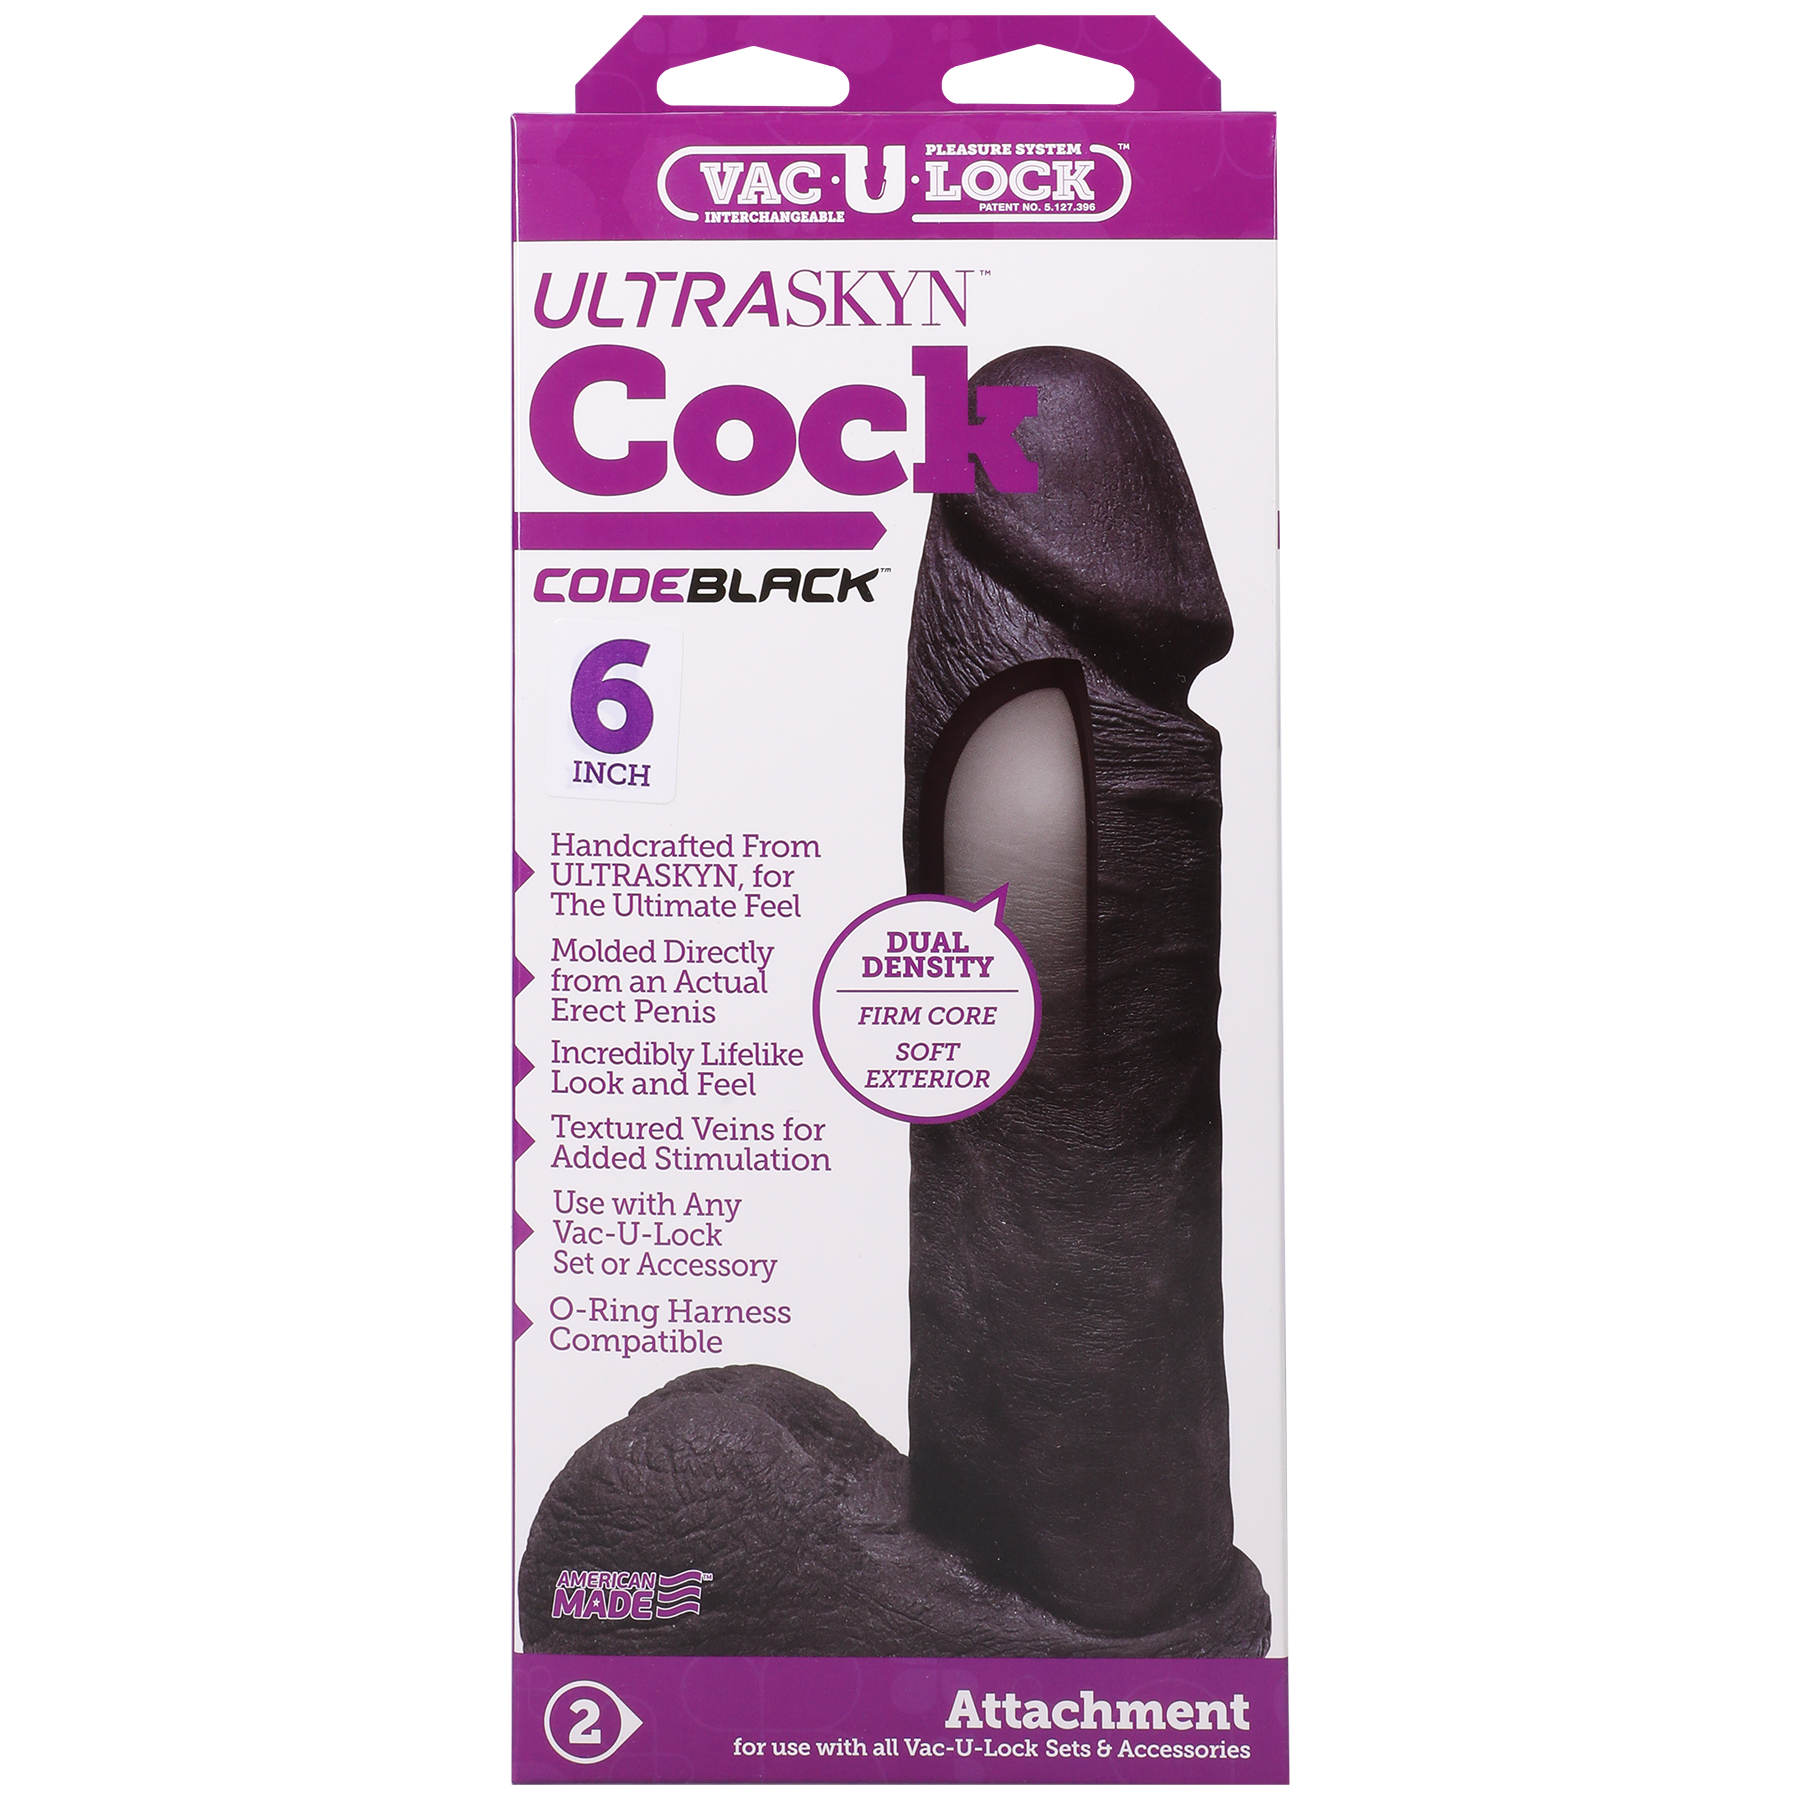 Vac-U-Lock CodeBlack - ULTRASKYN Cock